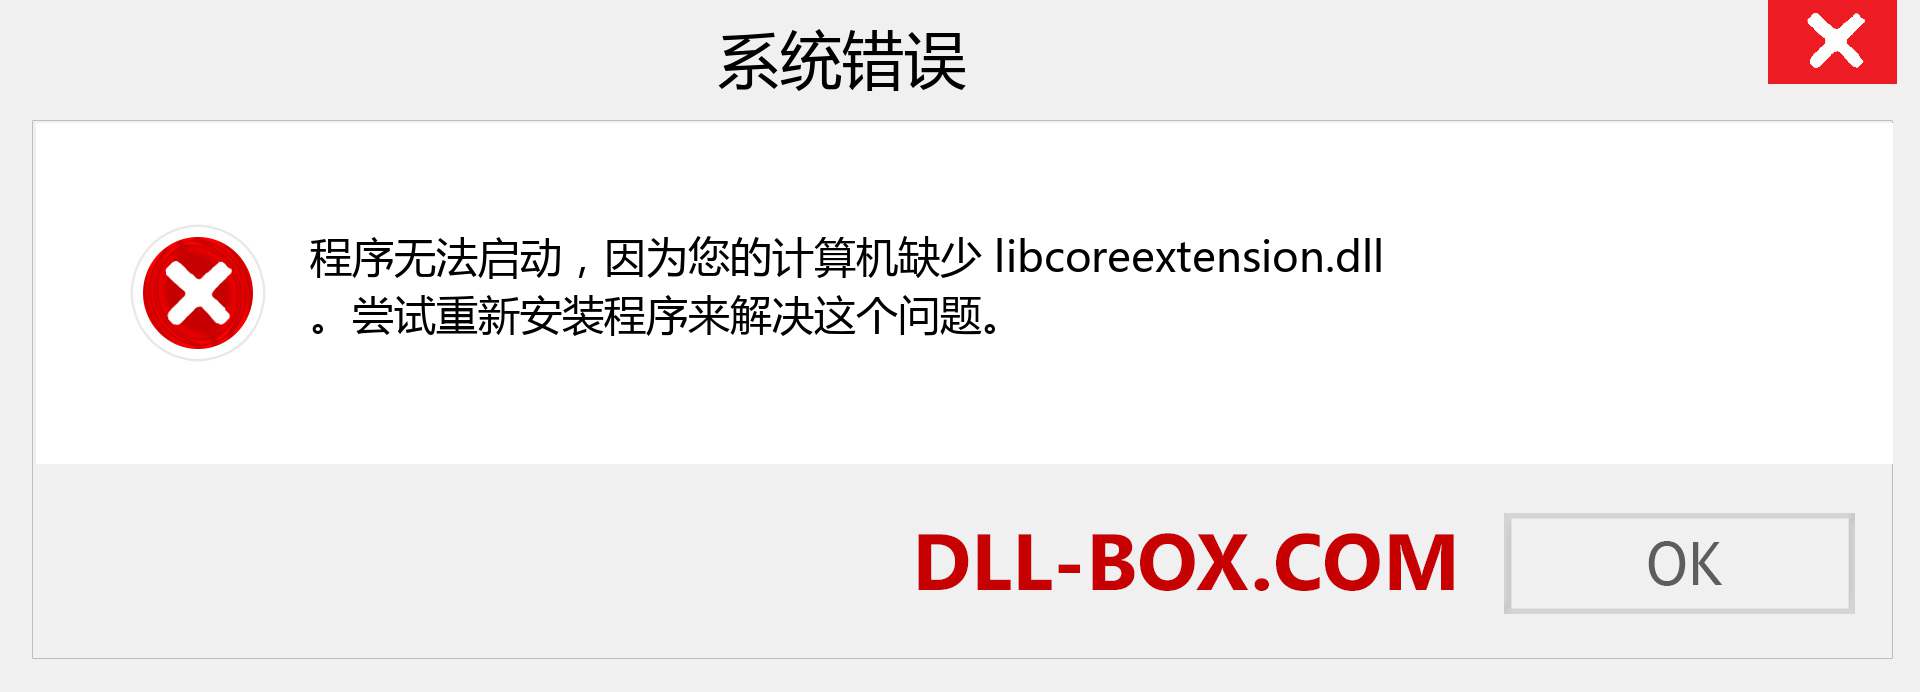 libcoreextension.dll 文件丢失？。 适用于 Windows 7、8、10 的下载 - 修复 Windows、照片、图像上的 libcoreextension dll 丢失错误